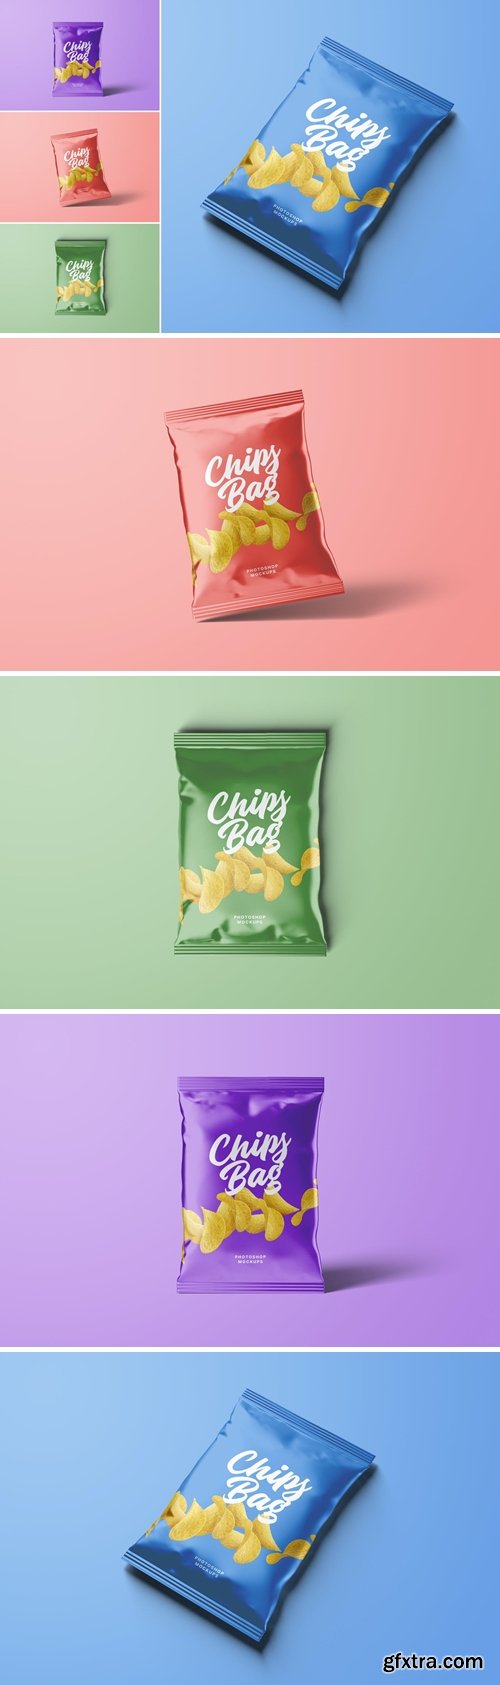 Chips Bag Packaging Mockups